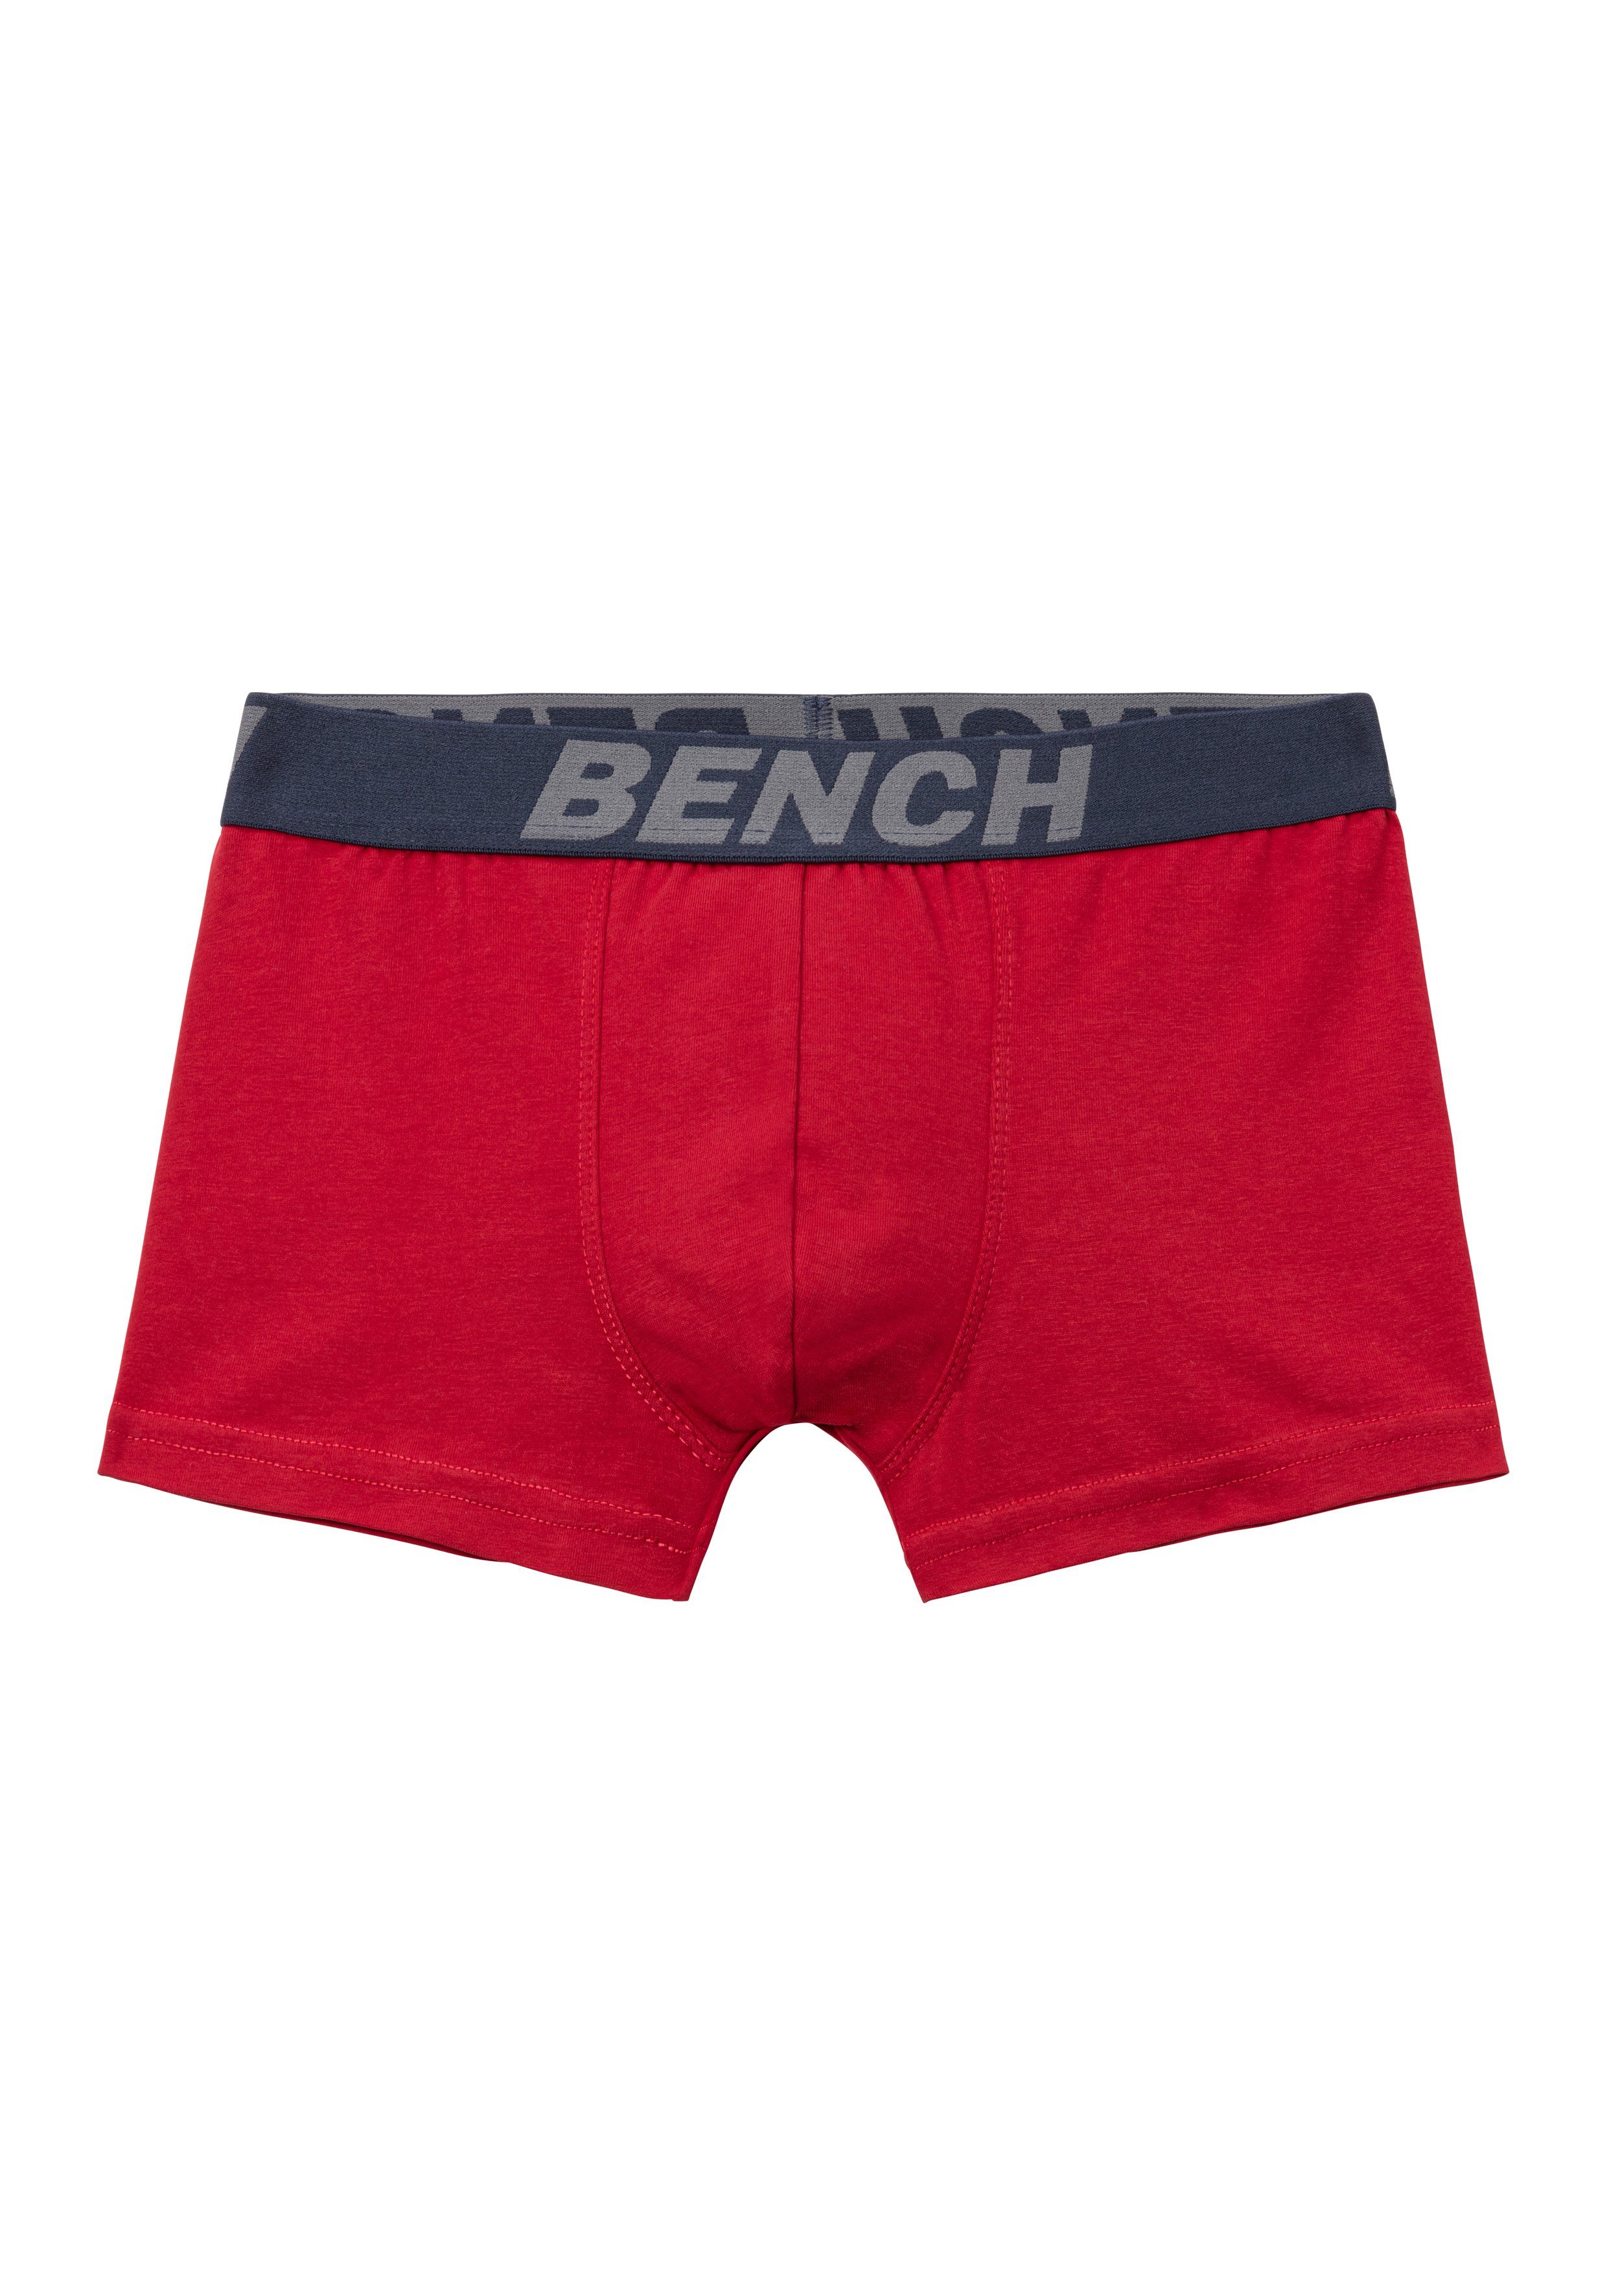 Bench. Boxer (Packung, 4-St) weiß, Bench mit rot, Schriftzug Bund grau-meliert für blau, im Jungen